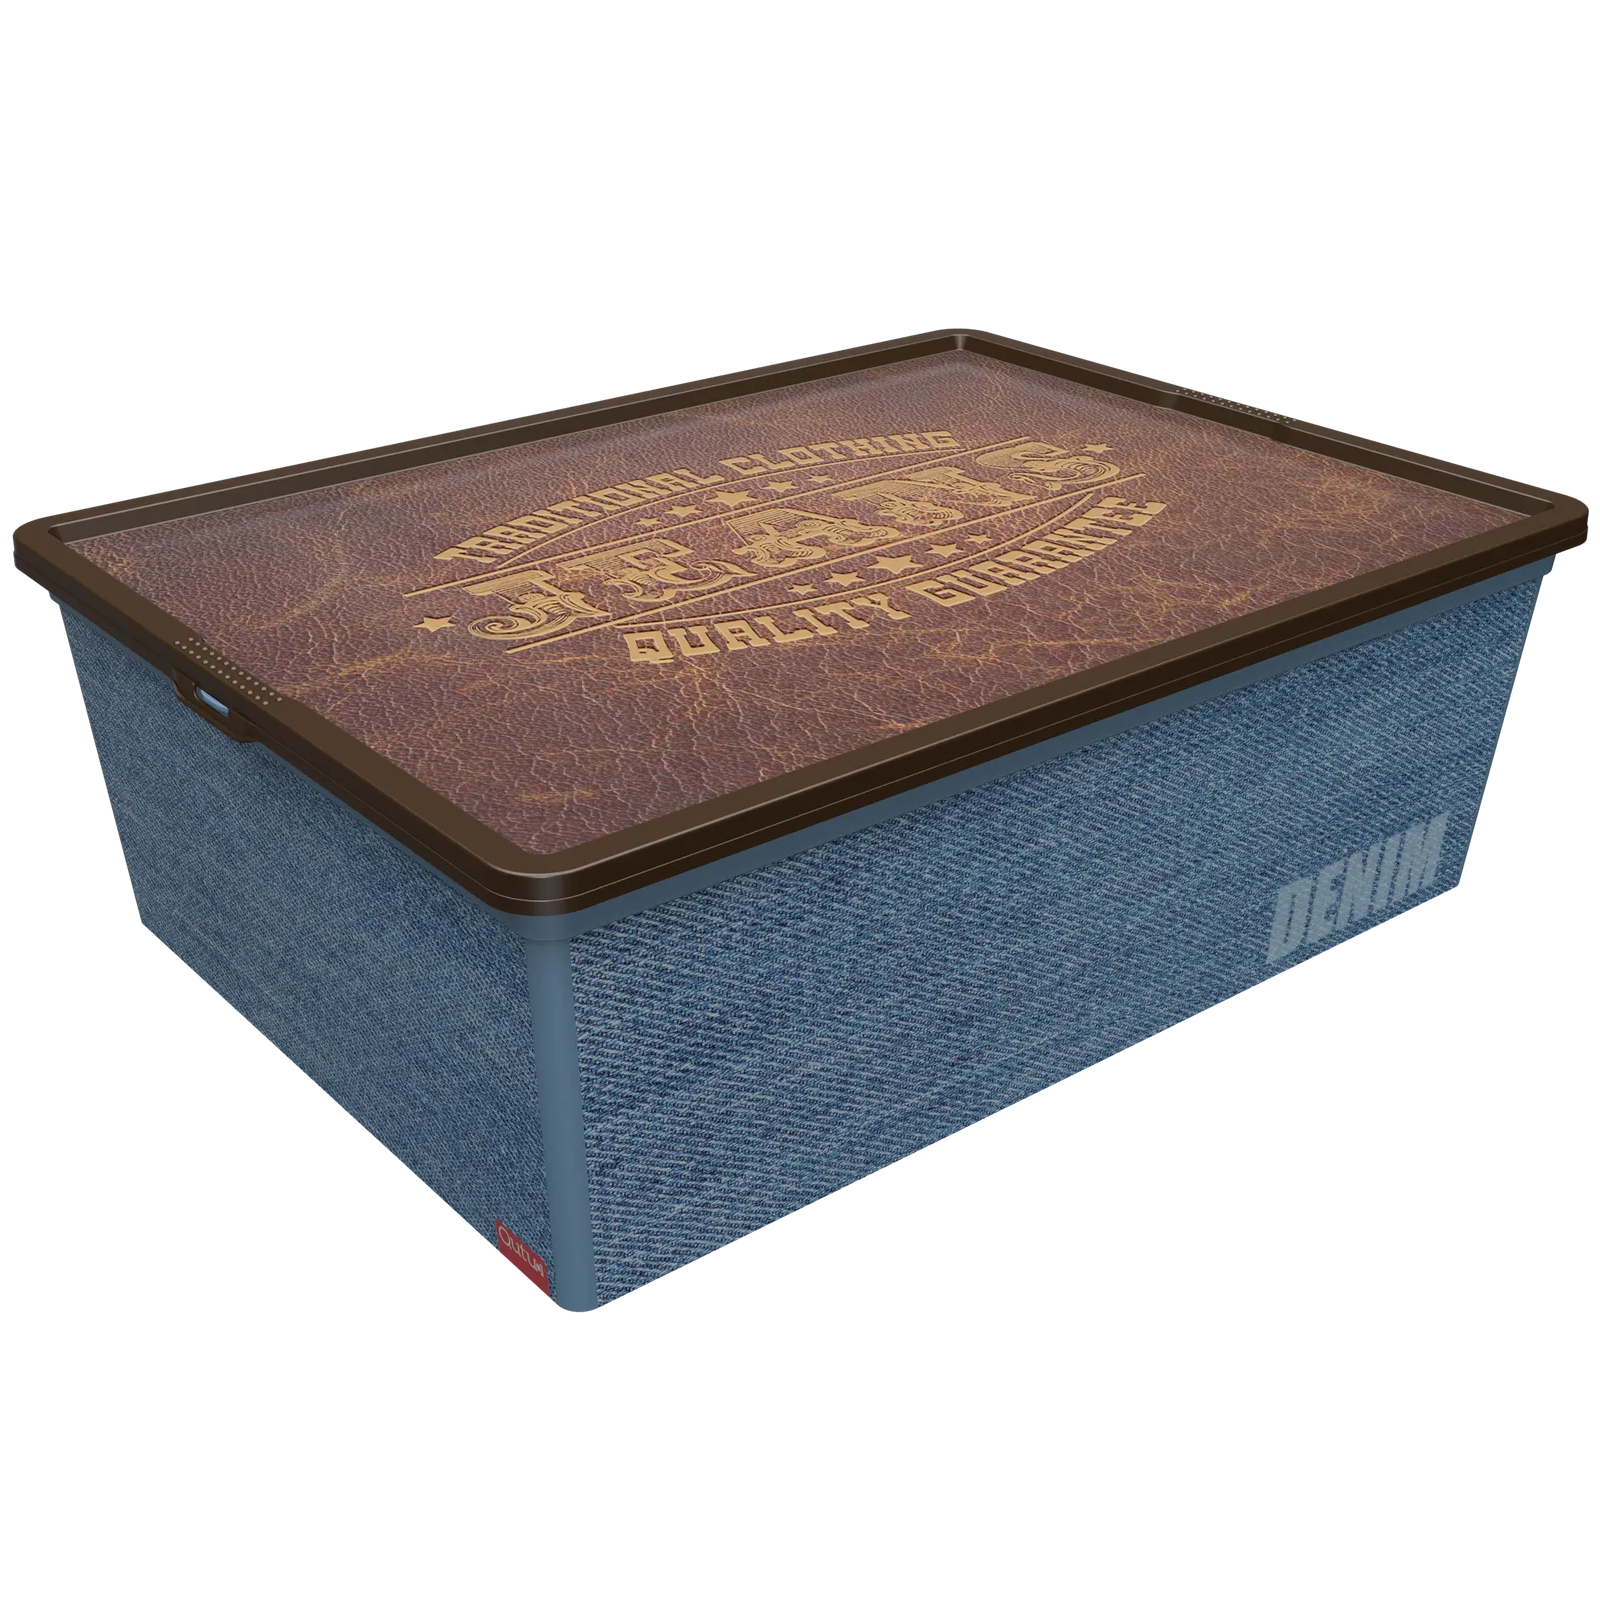 Коробка Qutu Trend Box Denim Leather, 25 л, 52,5х37х17,5 см, синий с коричневым (TREND BOX с/к DENIM LEATHER 25л.) - фото 1